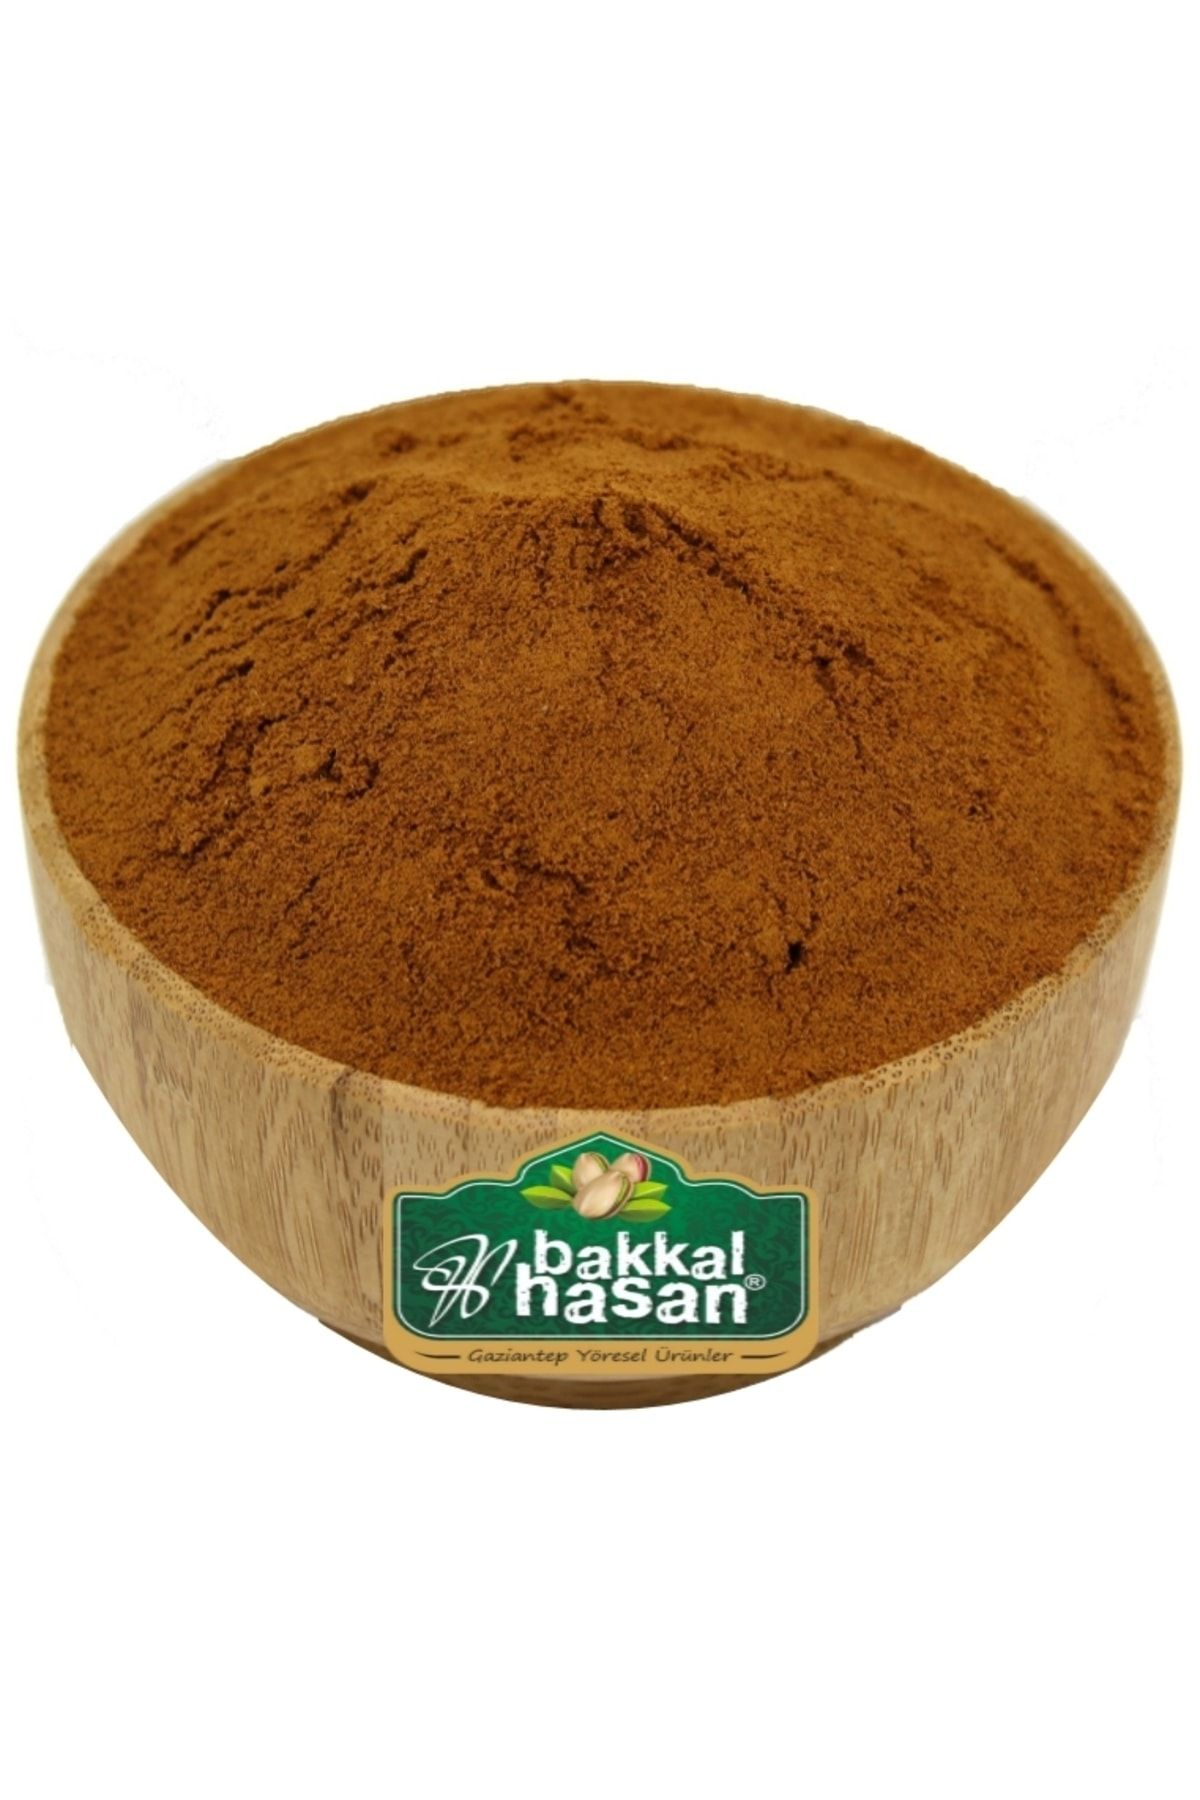 bakkal hasan Damla Sakızlı Toz Kahve 1 kg - Bakkal Hasan